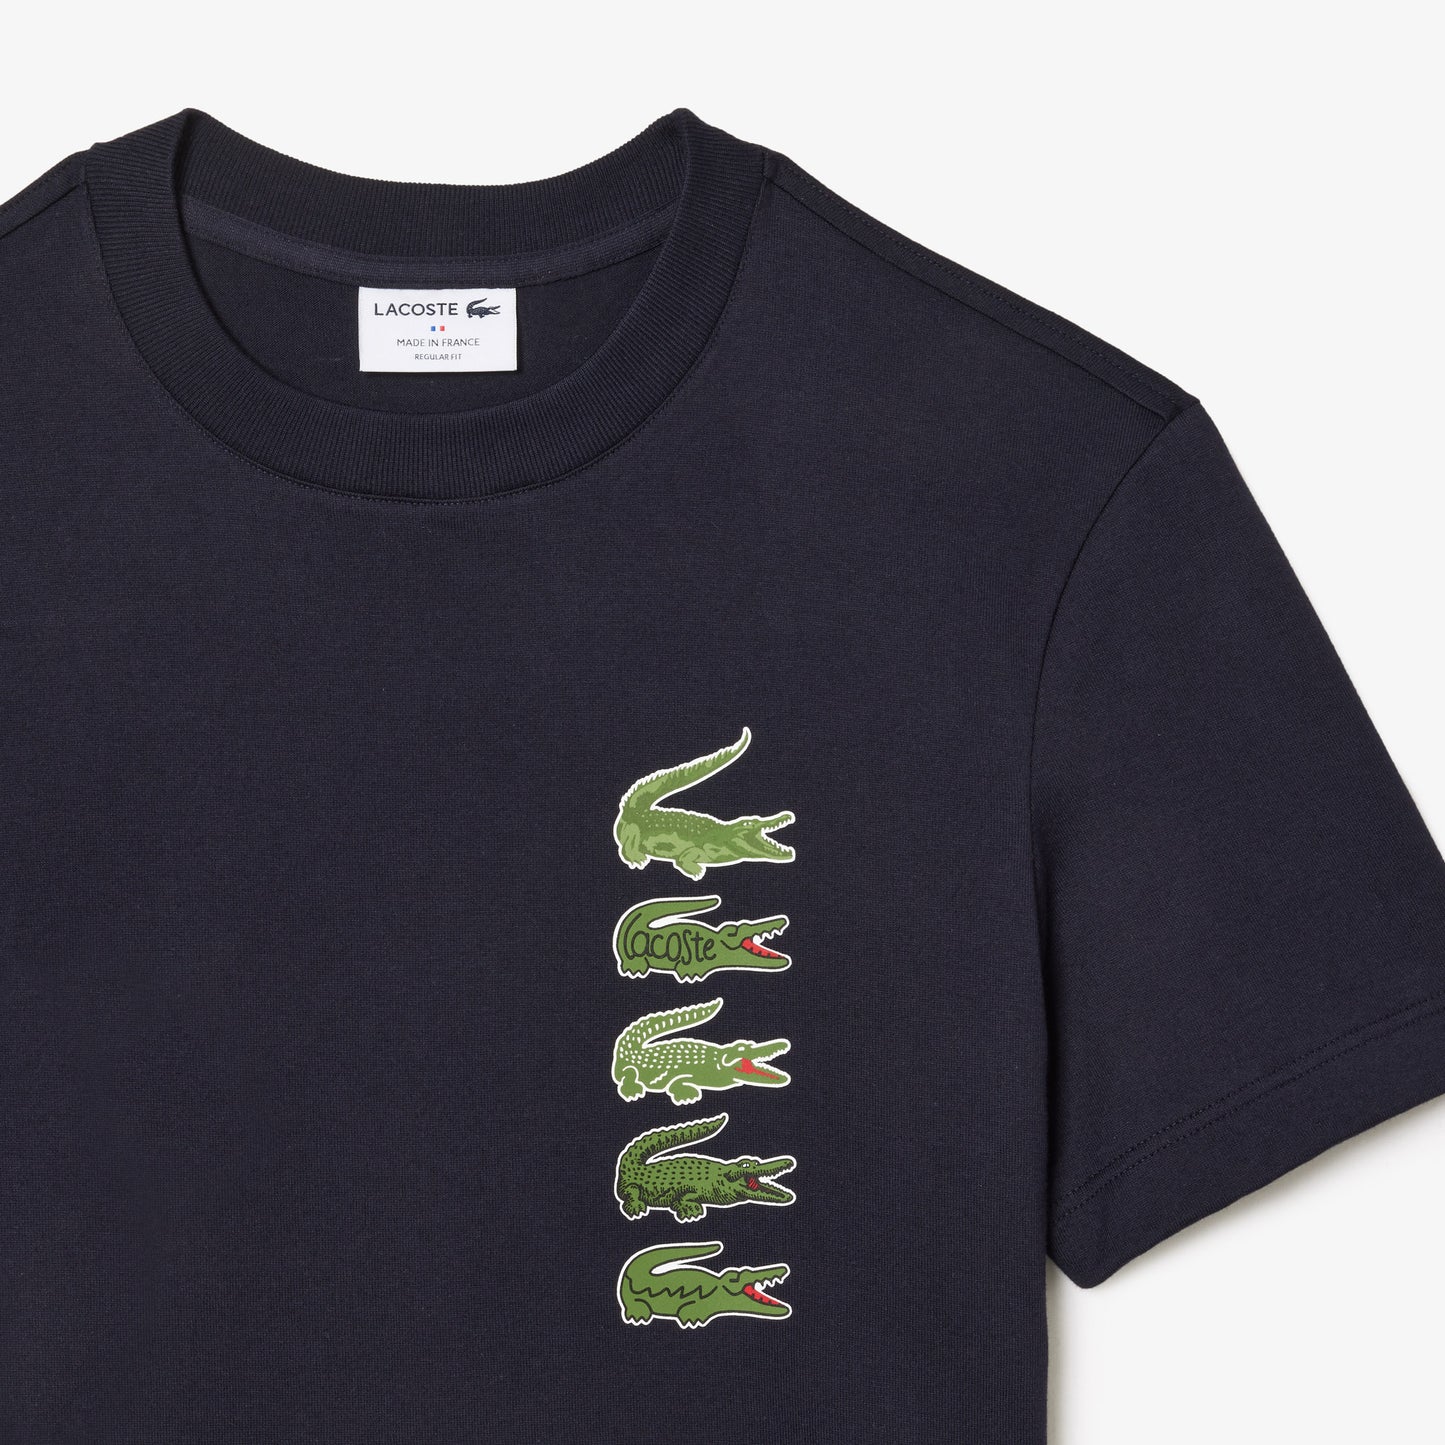 LACOSTE Men's Regular Fit Iconic Croc T-Shirt